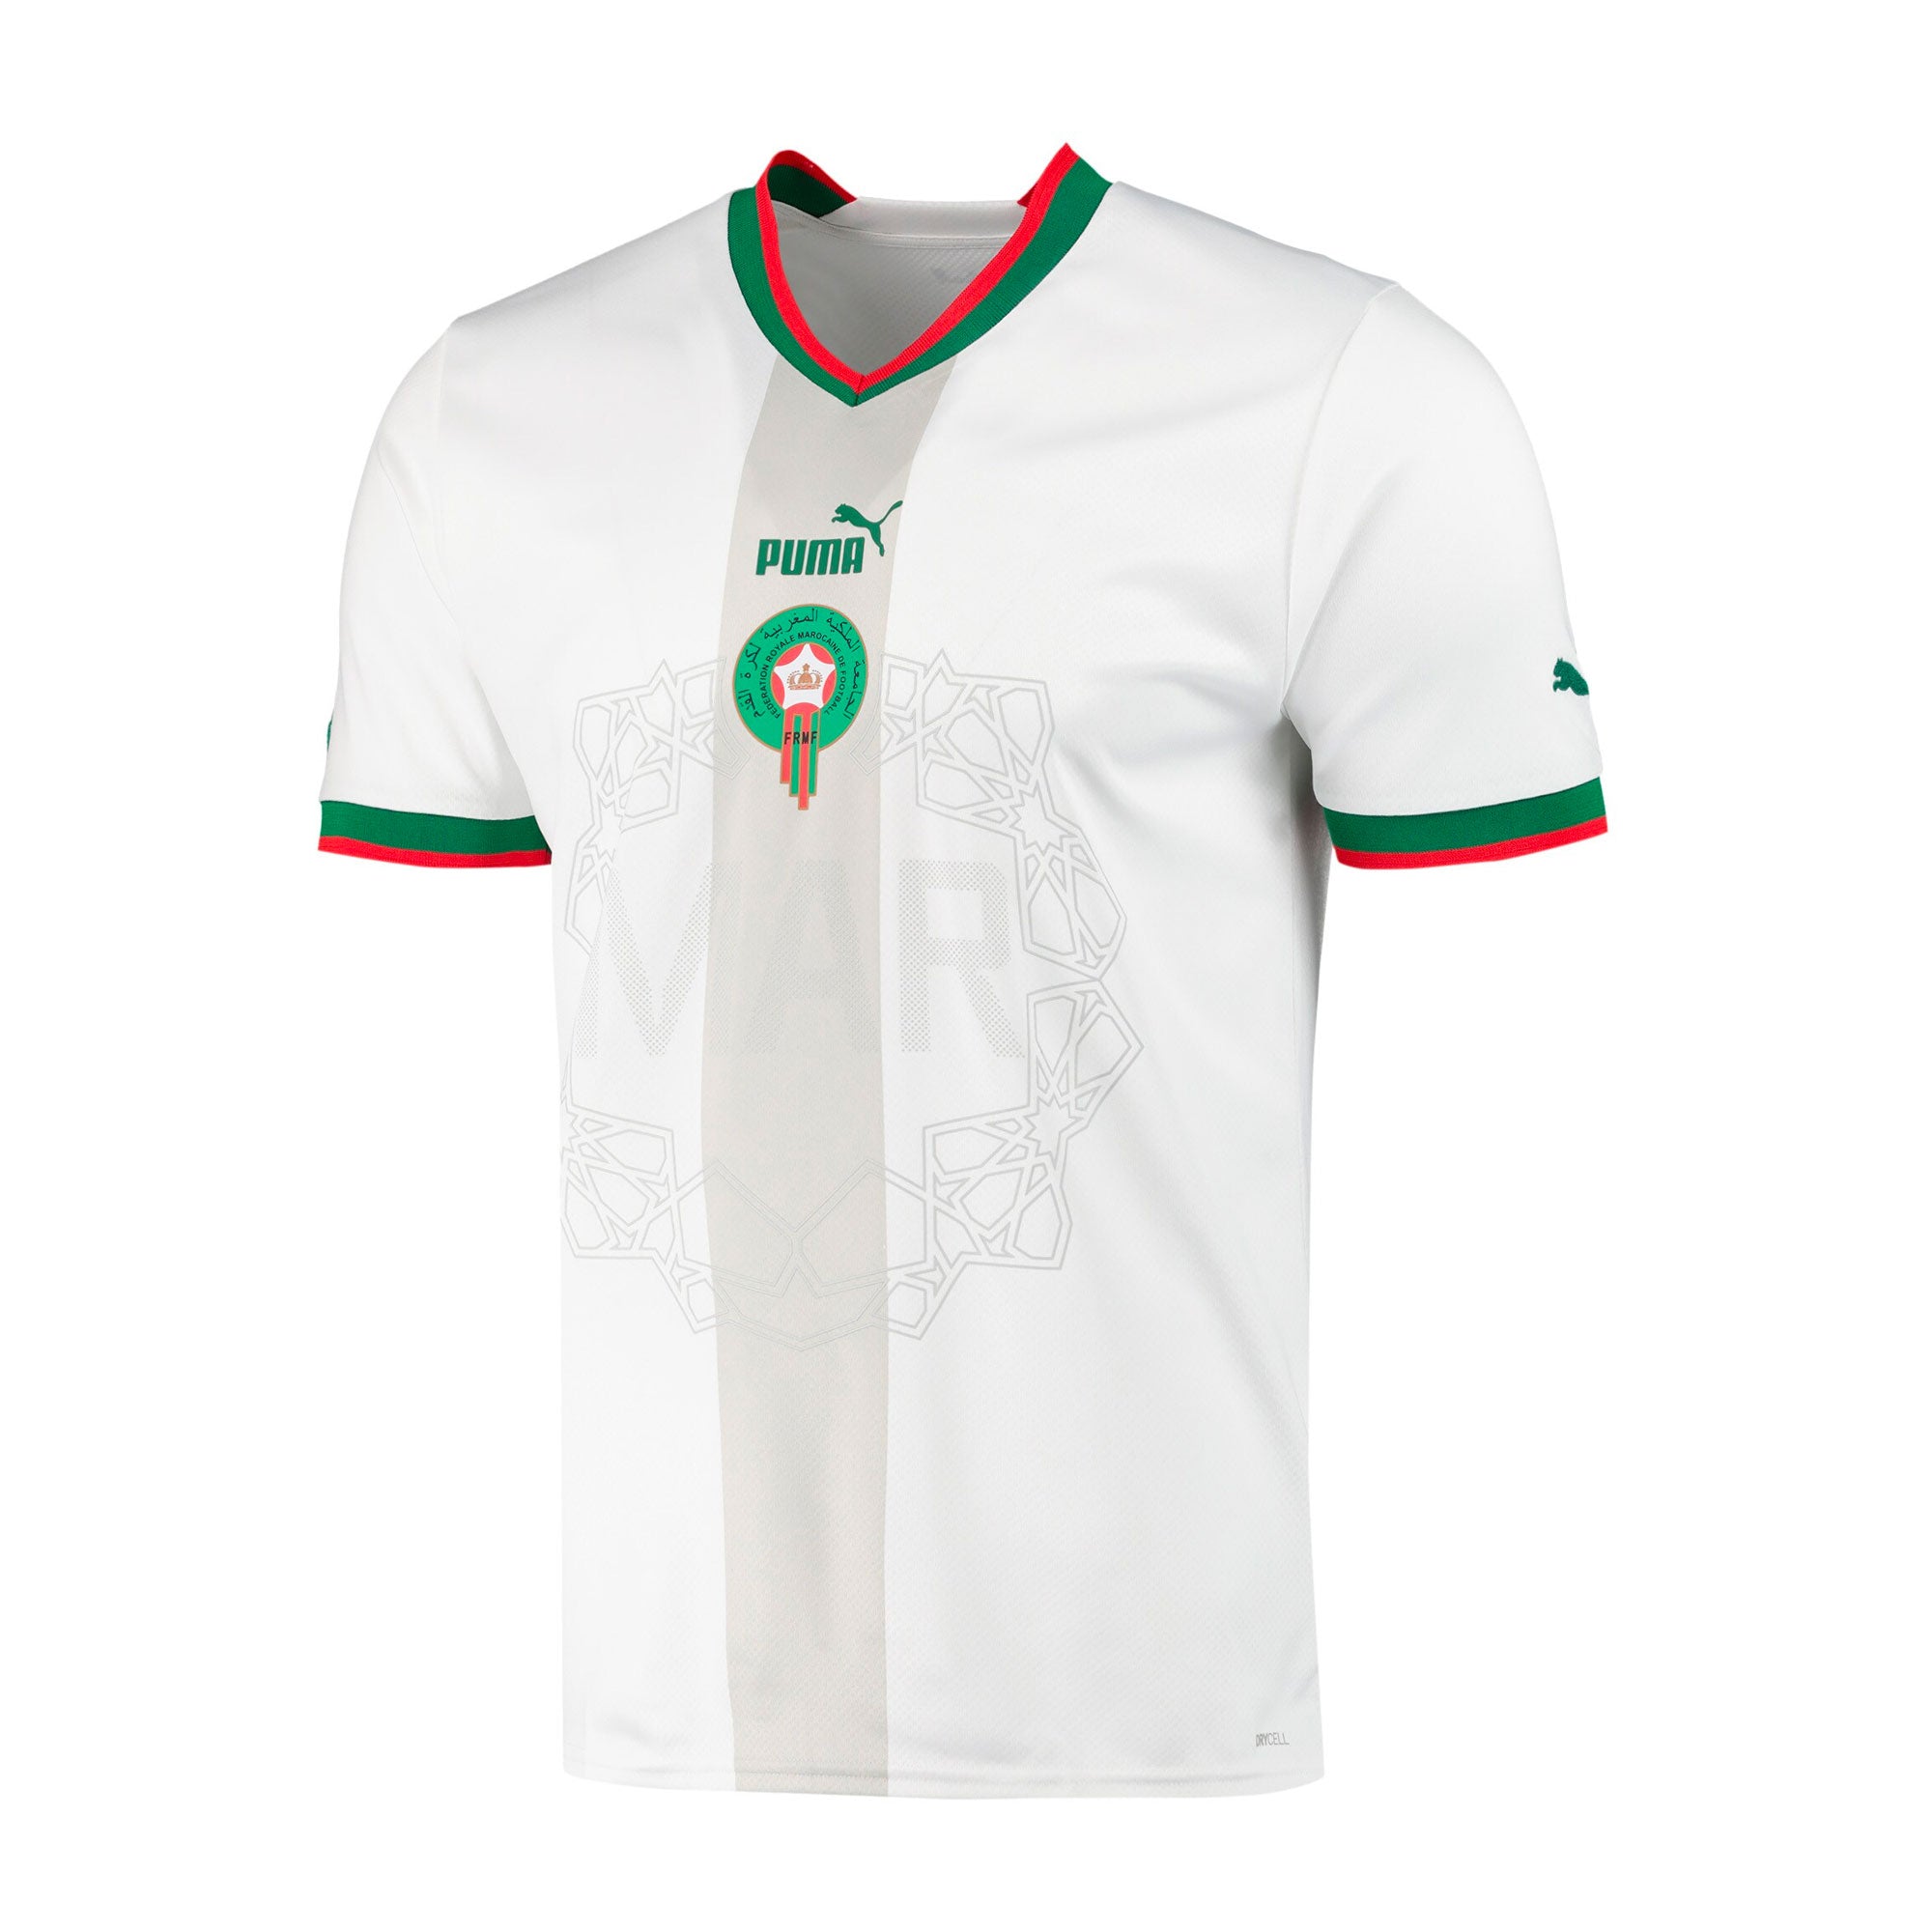 Puma 2022 Italy/Italia Futbol/Soccer Away Jersey Kit - White Size Small